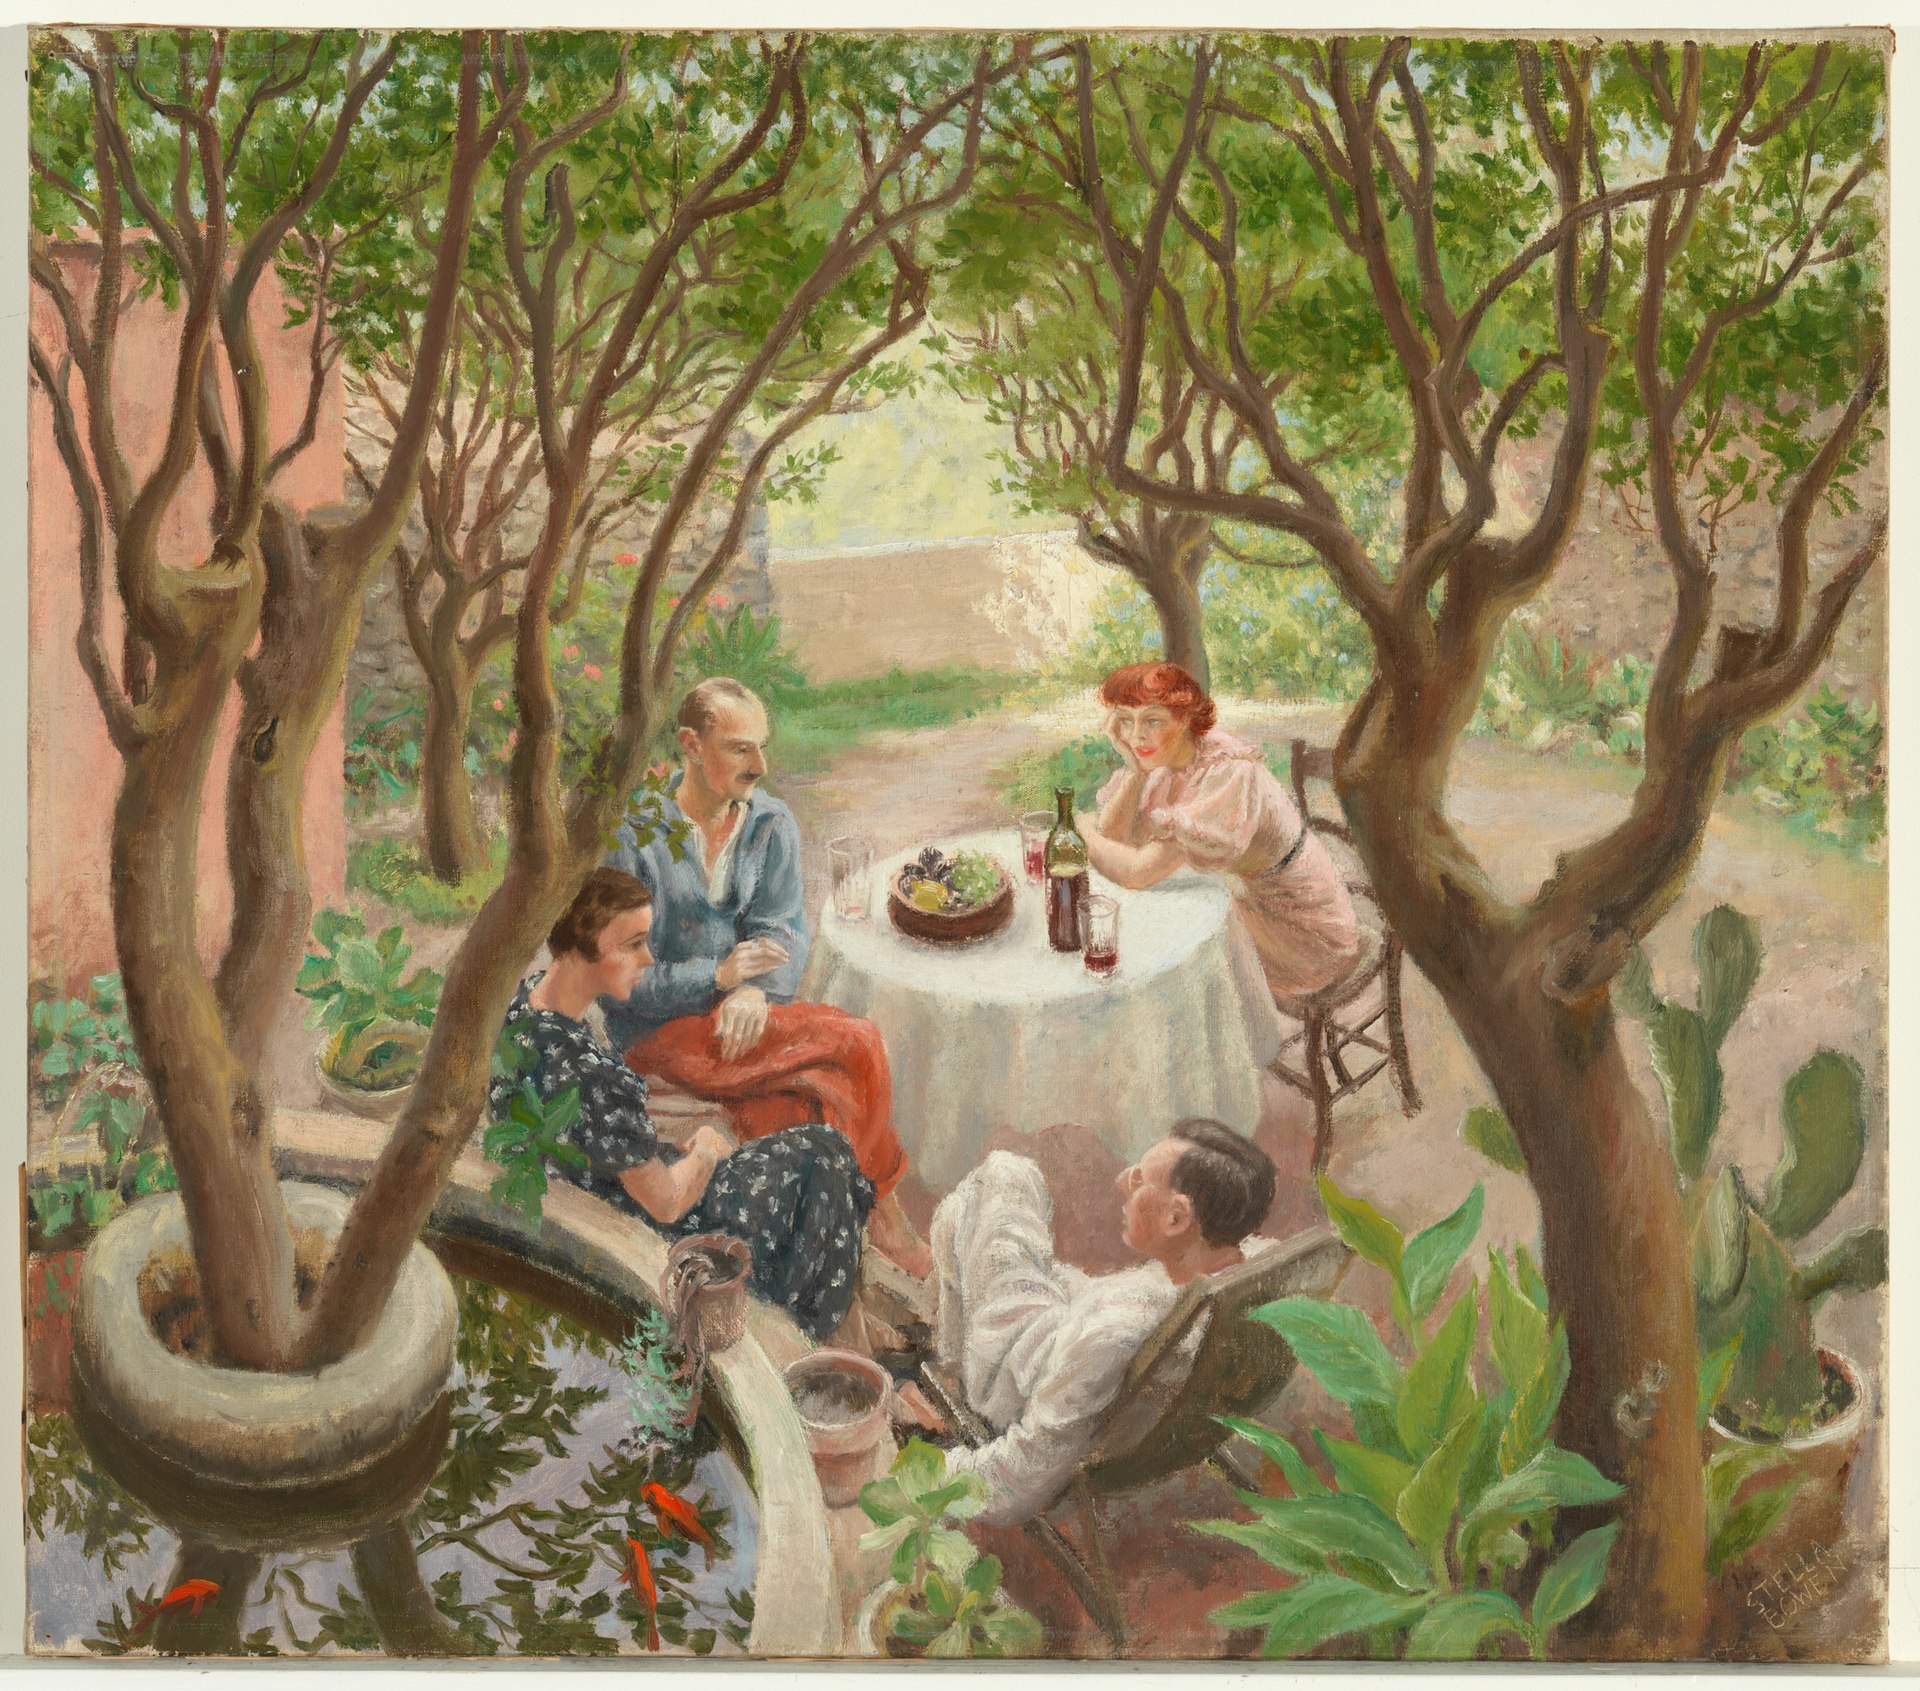 Разговоры в Провансе, Кань-сюр-мер by Стелла Боуэн - 1936 - 63.7 x 72.3 см 